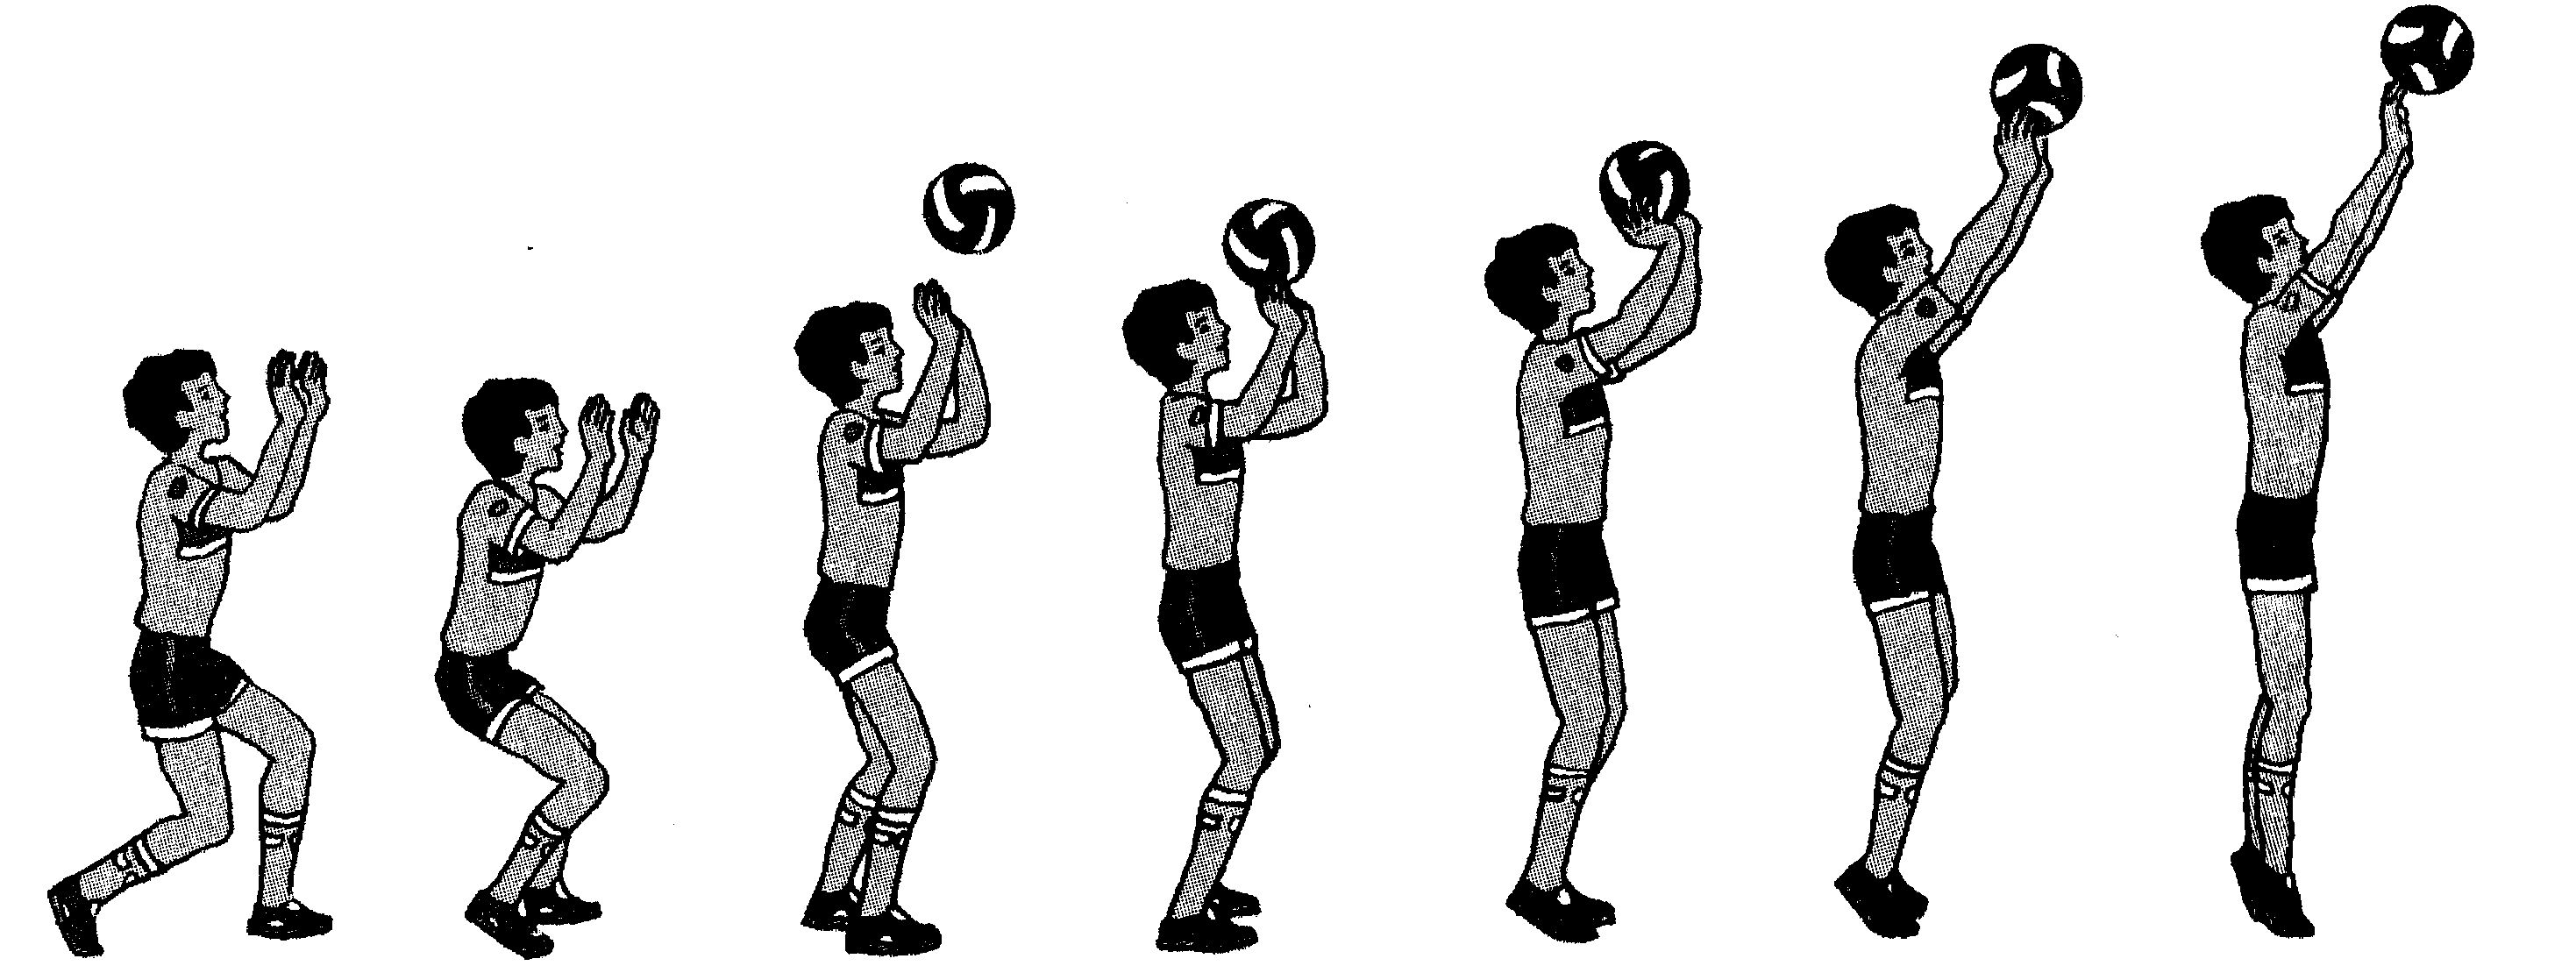 Передача мяча сверху и снизу. Верхняя передача мяча двумя руками в волейболе. Техника передач мяча в парах сверху и снизу. Волейбол. Передача мяча 2 руками сверху в волейболе. Прием и передача мяча снизу двумя руками волейбол картинка.